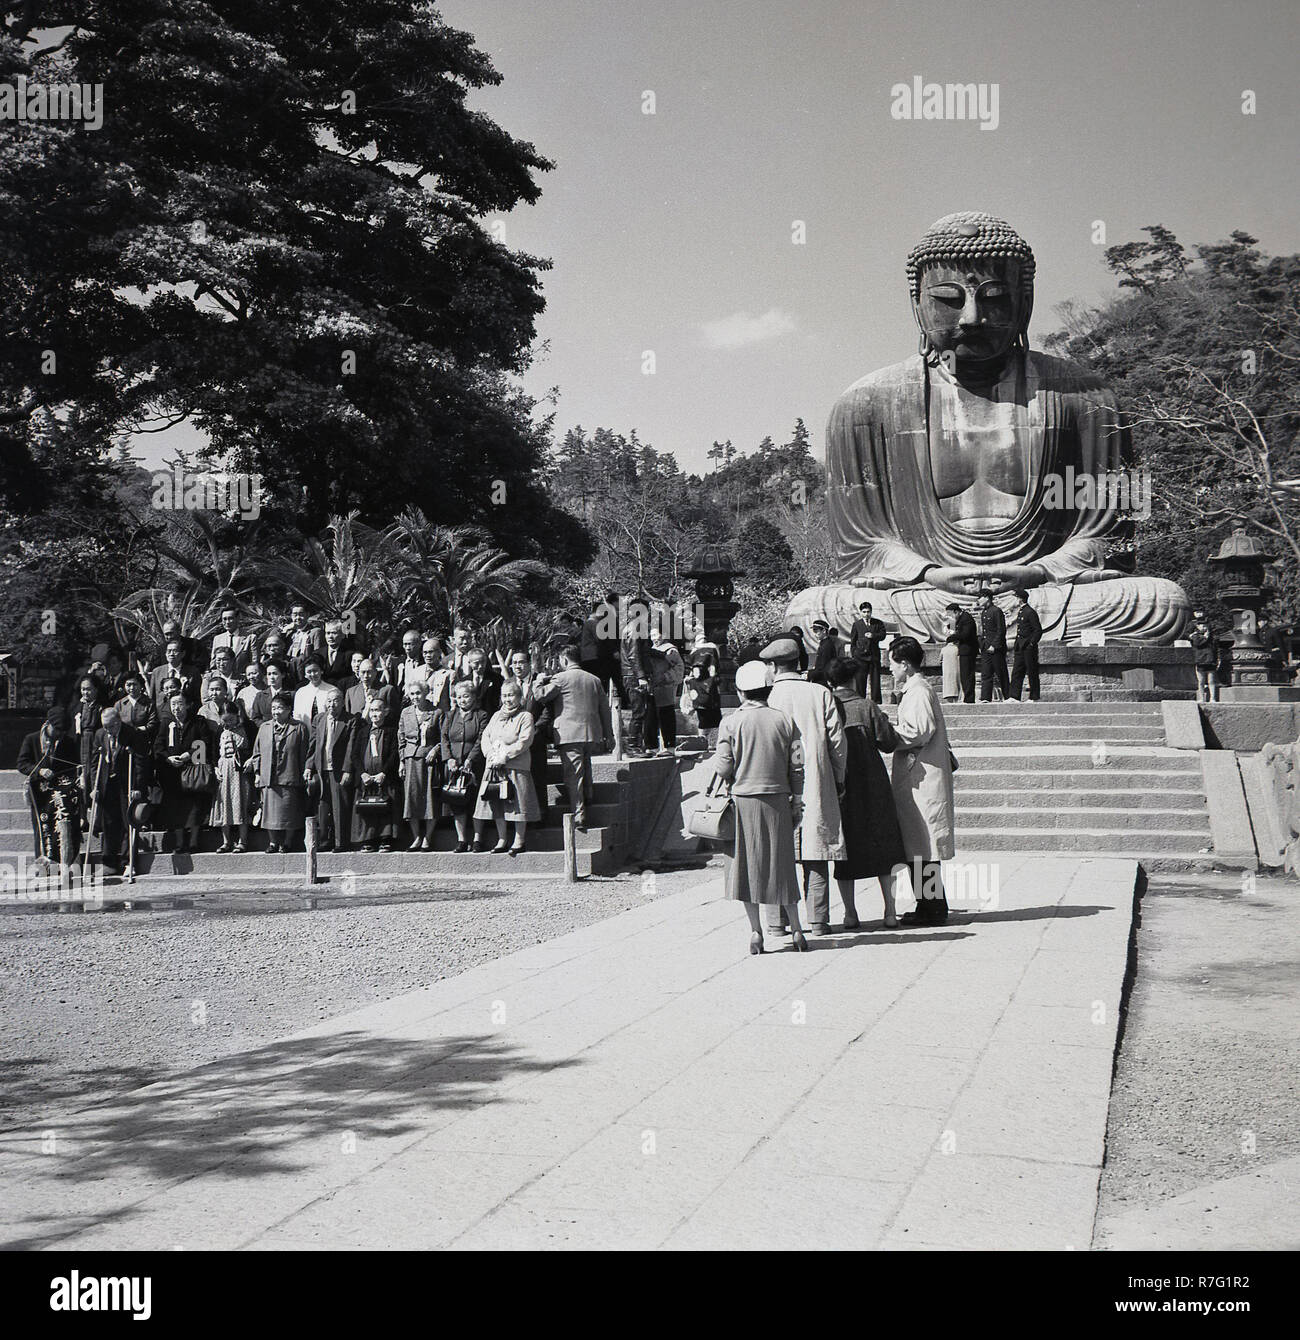 Années 1950, histrical, les touristes japonais se posent pour une photo de groupe devant le grand Bouddha de Kamakura. Cette gigantesque statue en bronze d'Amida Buddha se trouve dans l'enceinte de l'Kotokuin temple, Kanagawa, Japon. Banque D'Images